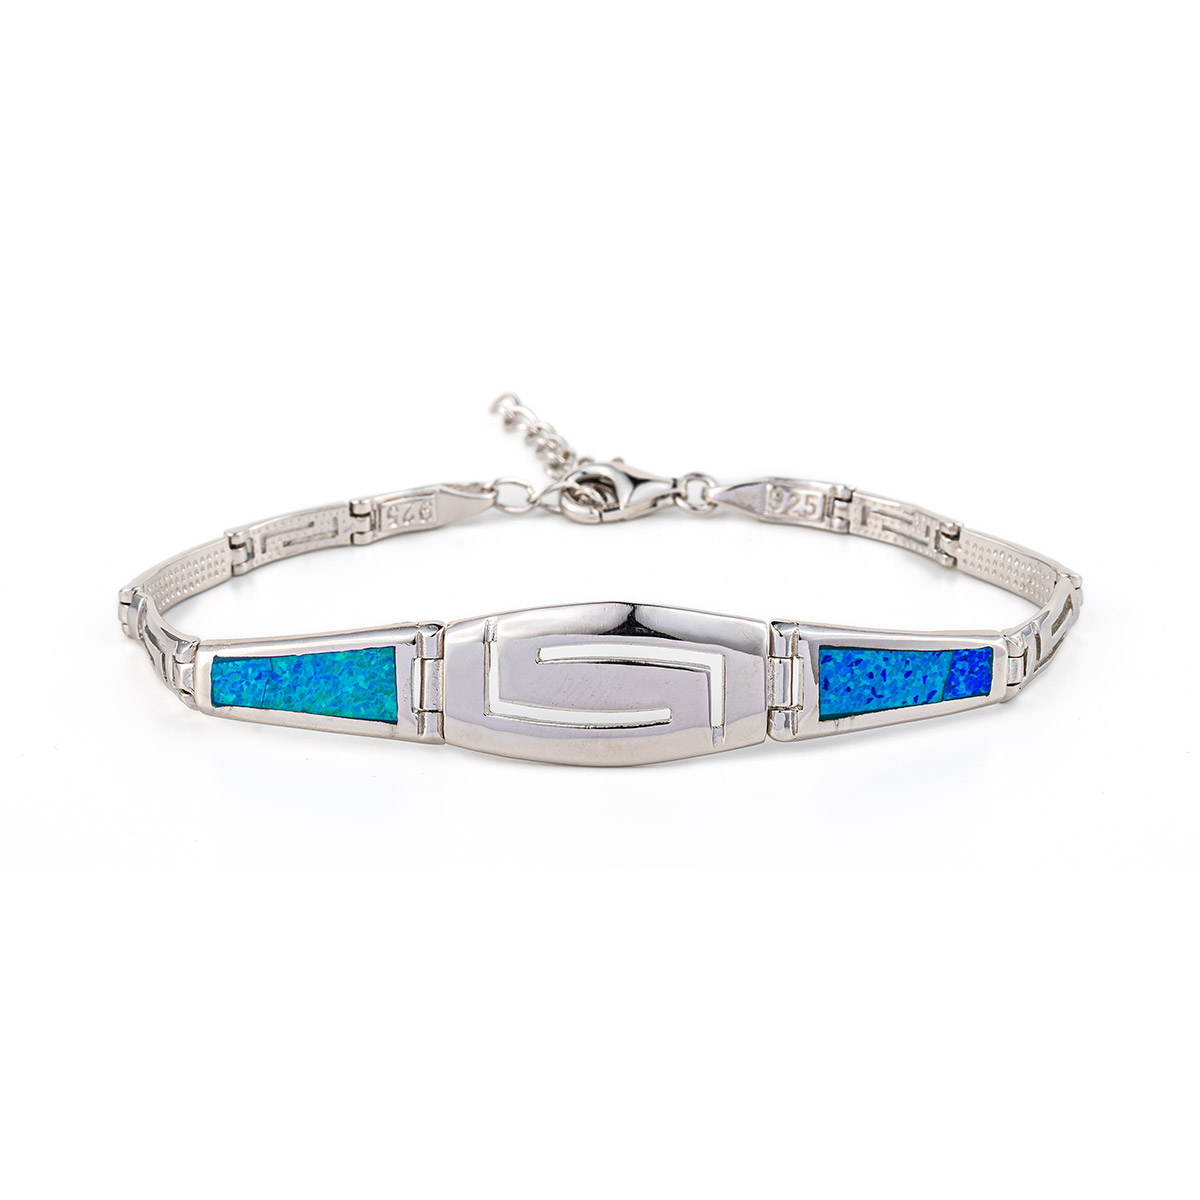 Meander Bracelet - 925 Sterling Silver with Opal